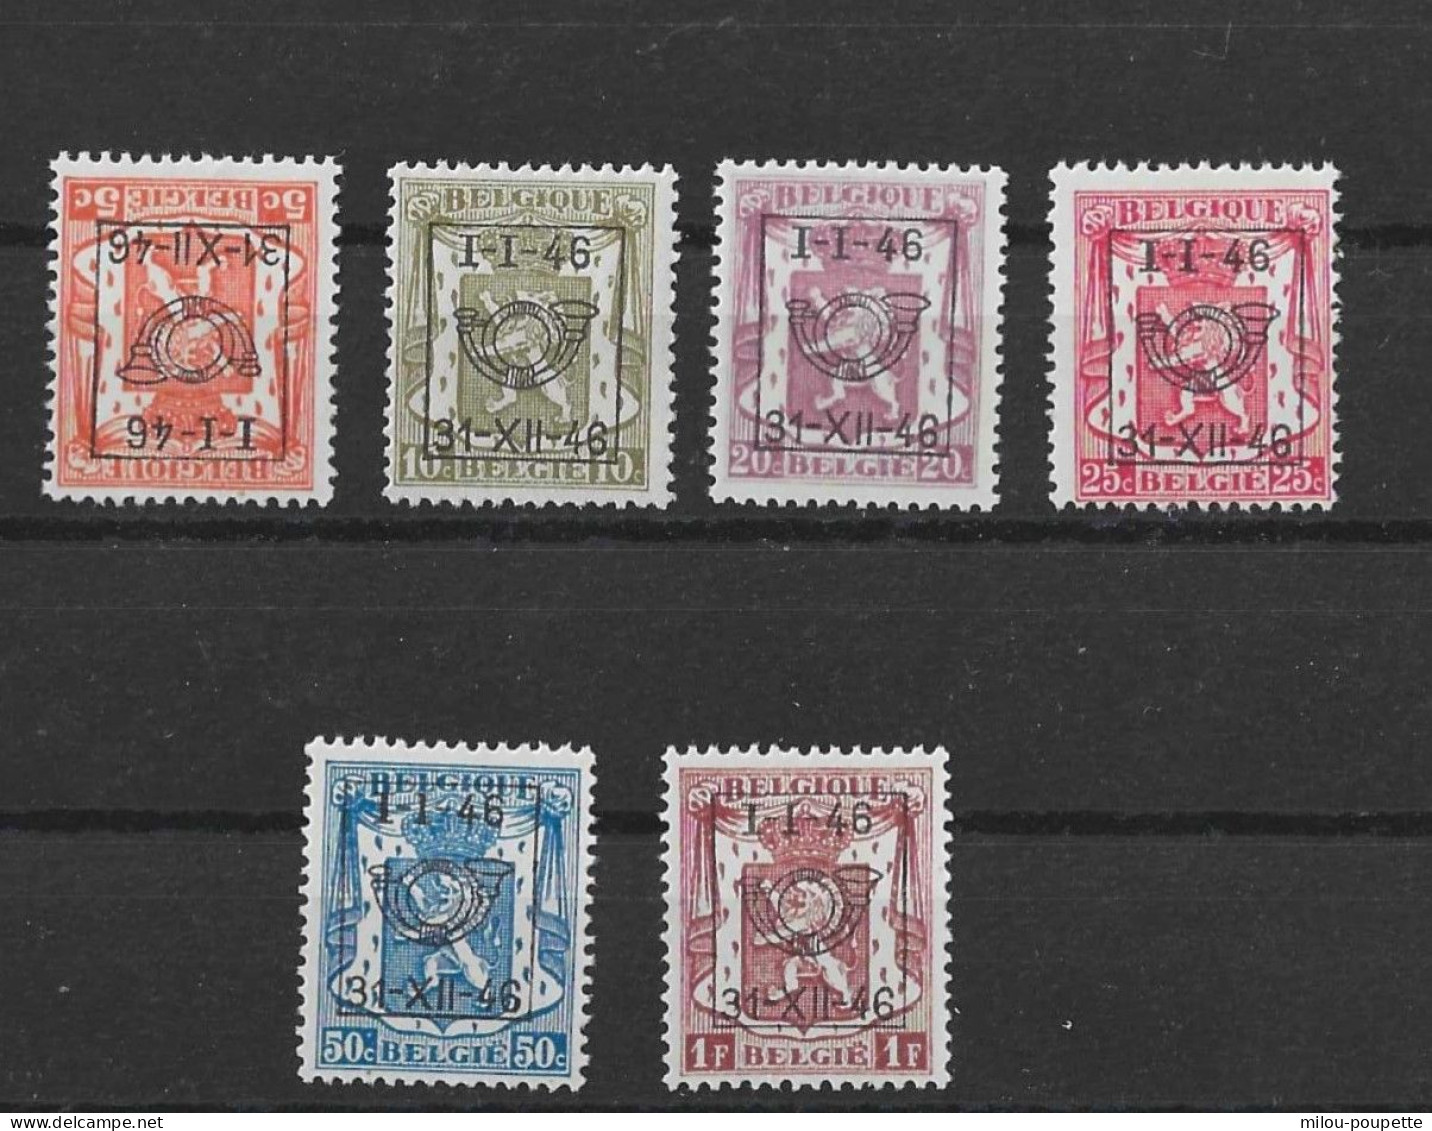 TIMBRES BELGIQUE Préoblitérés  PRE 547/552XX - Typo Precancels 1936-51 (Small Seal Of The State)